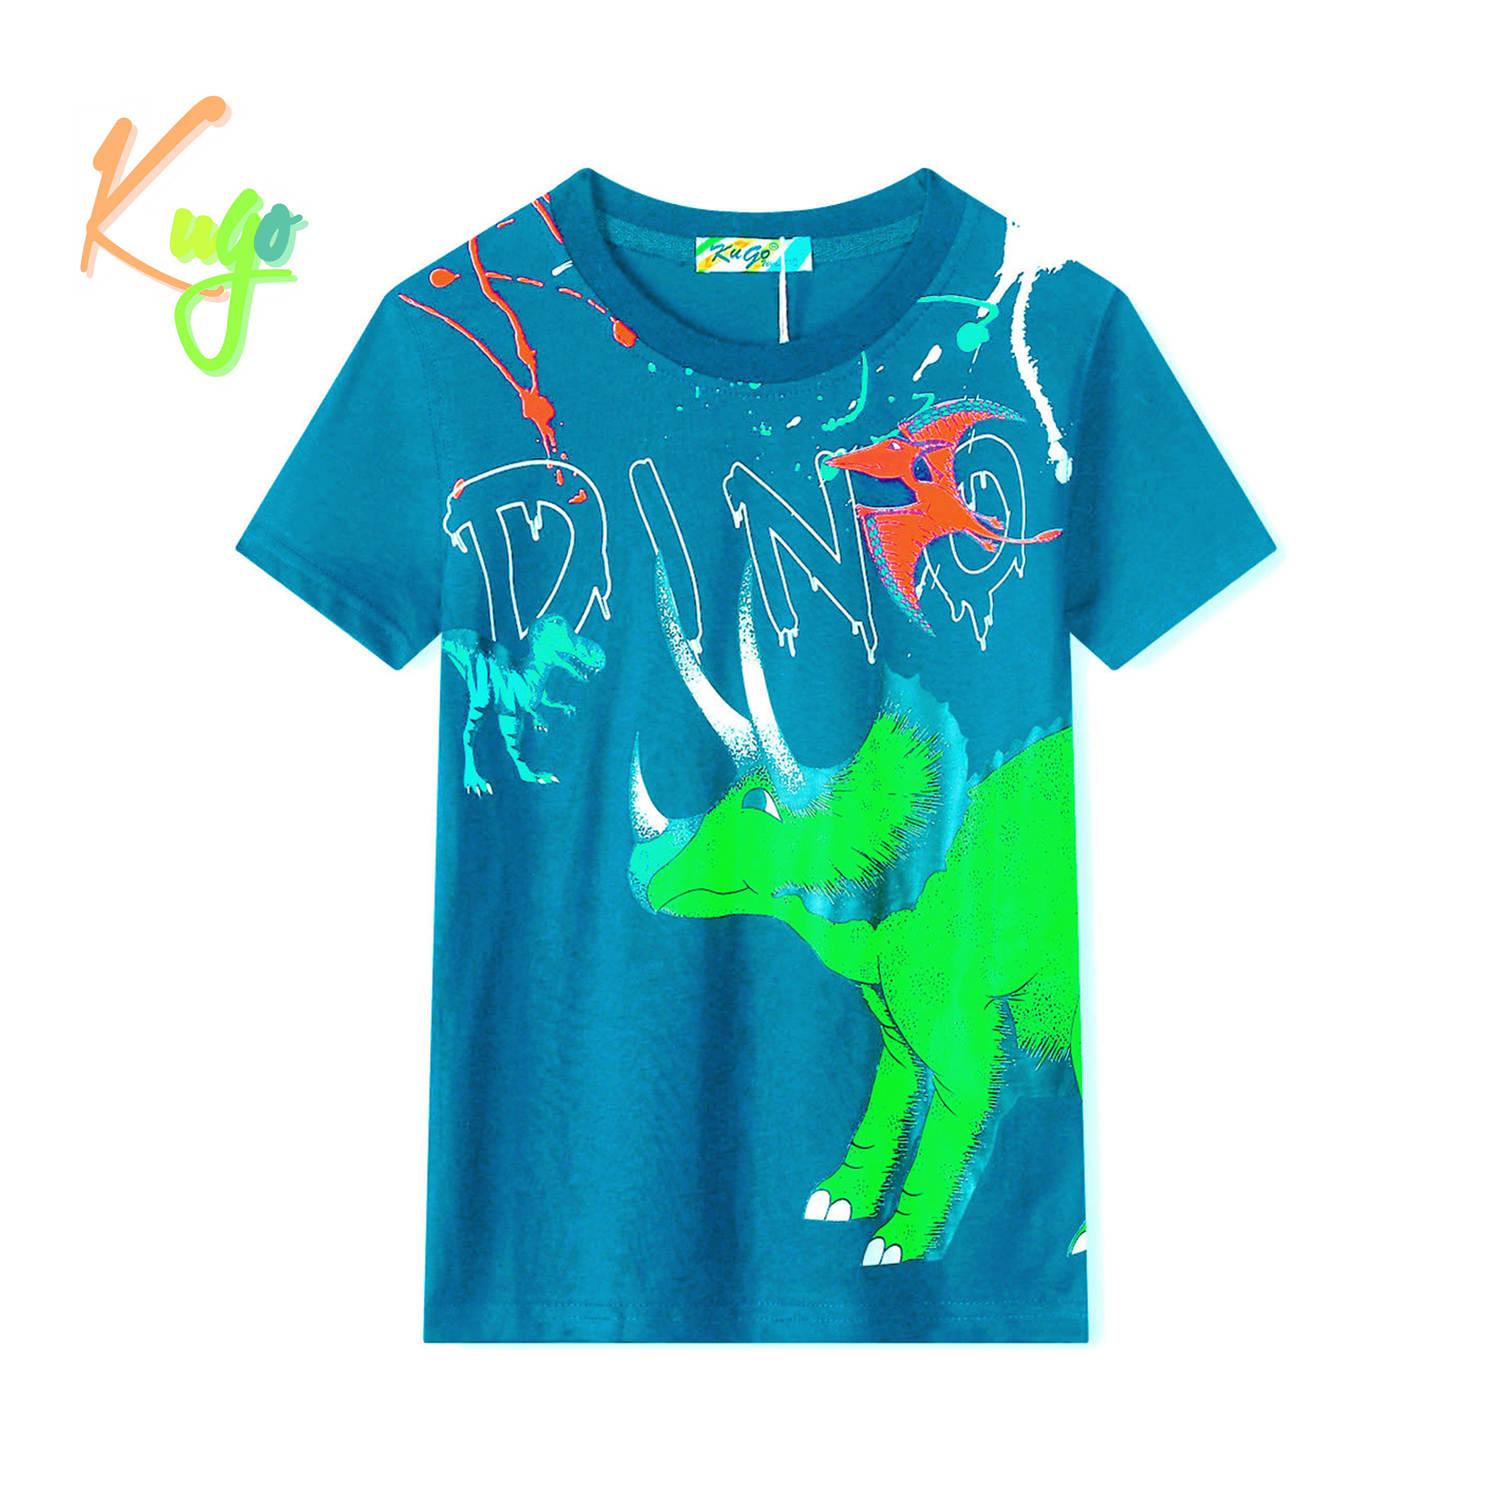 Chlapecké tričko - KUGO TM8571C, tyrkysová Barva: Tyrkysová, Velikost: 122